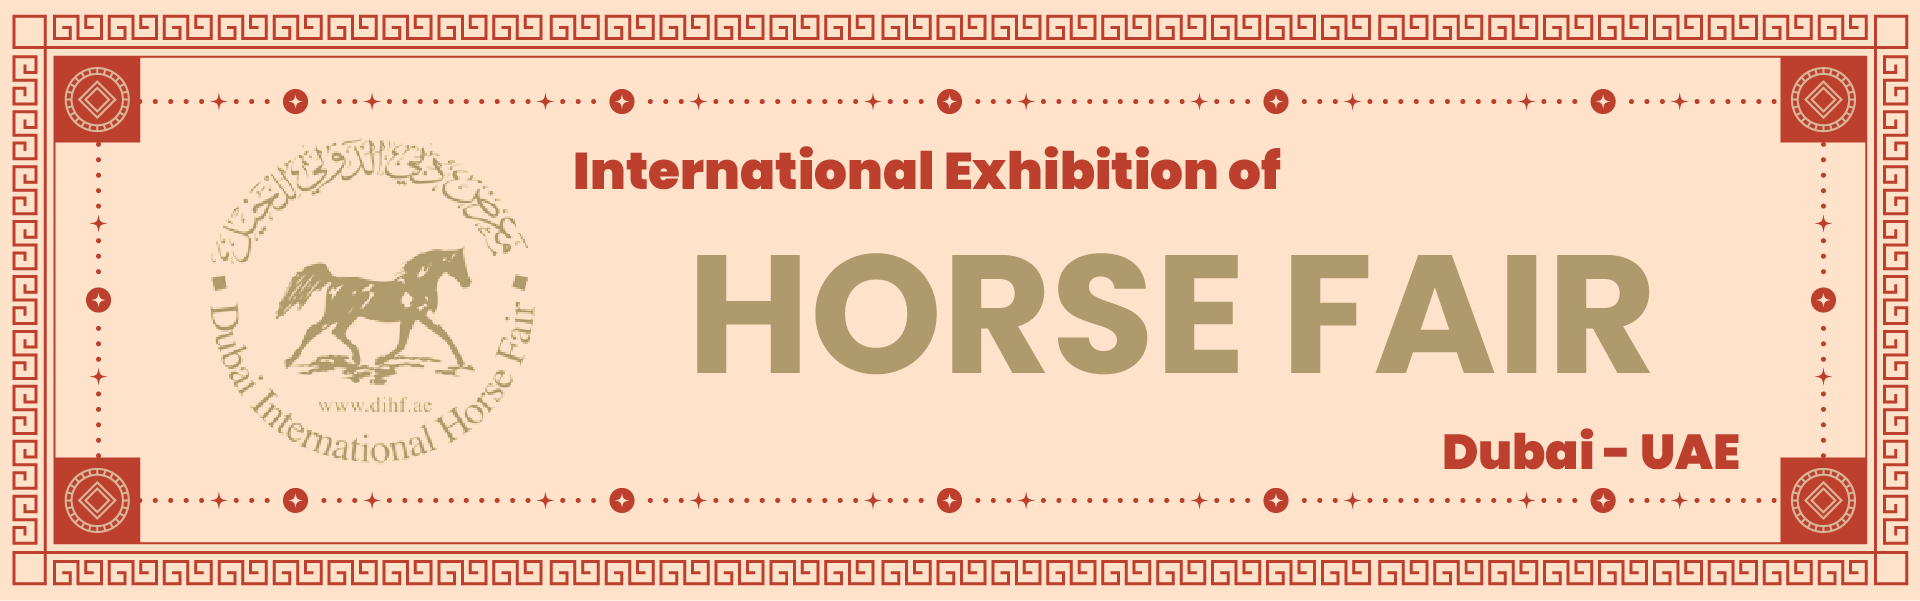 Dubai horse Exhibition Dubai United Arab Emirates